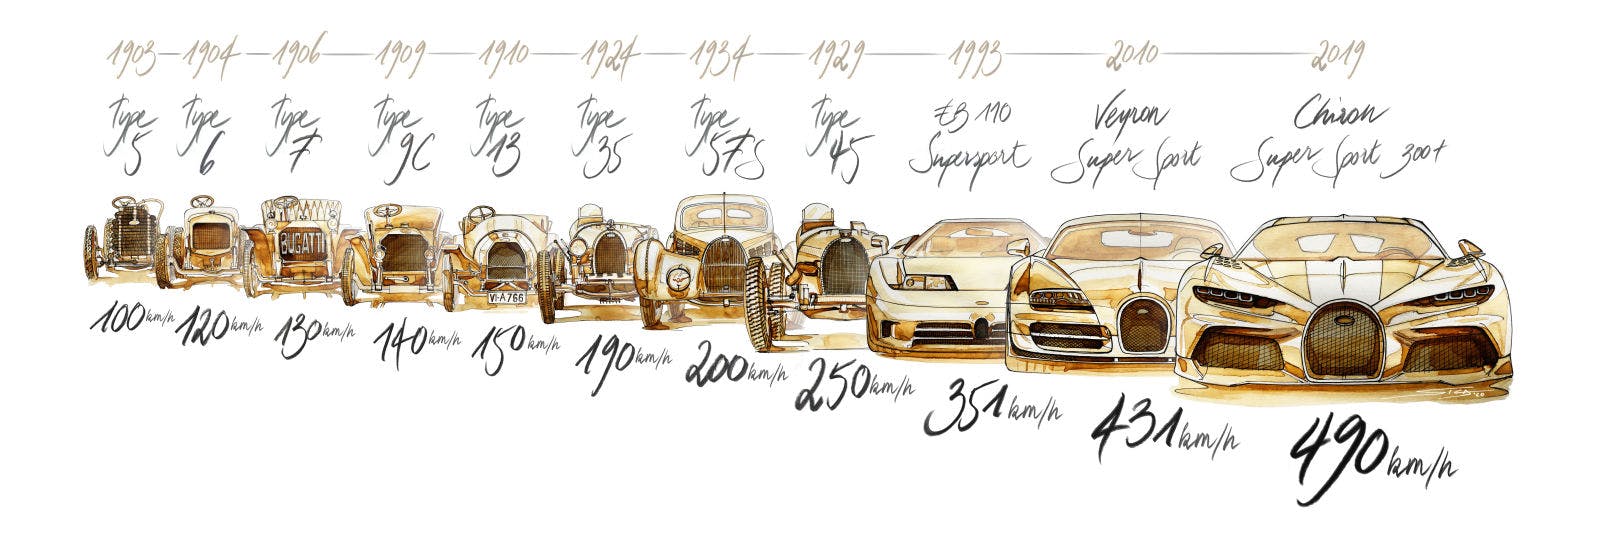 Die Bugatti Speedline von 1903 bis 2019.